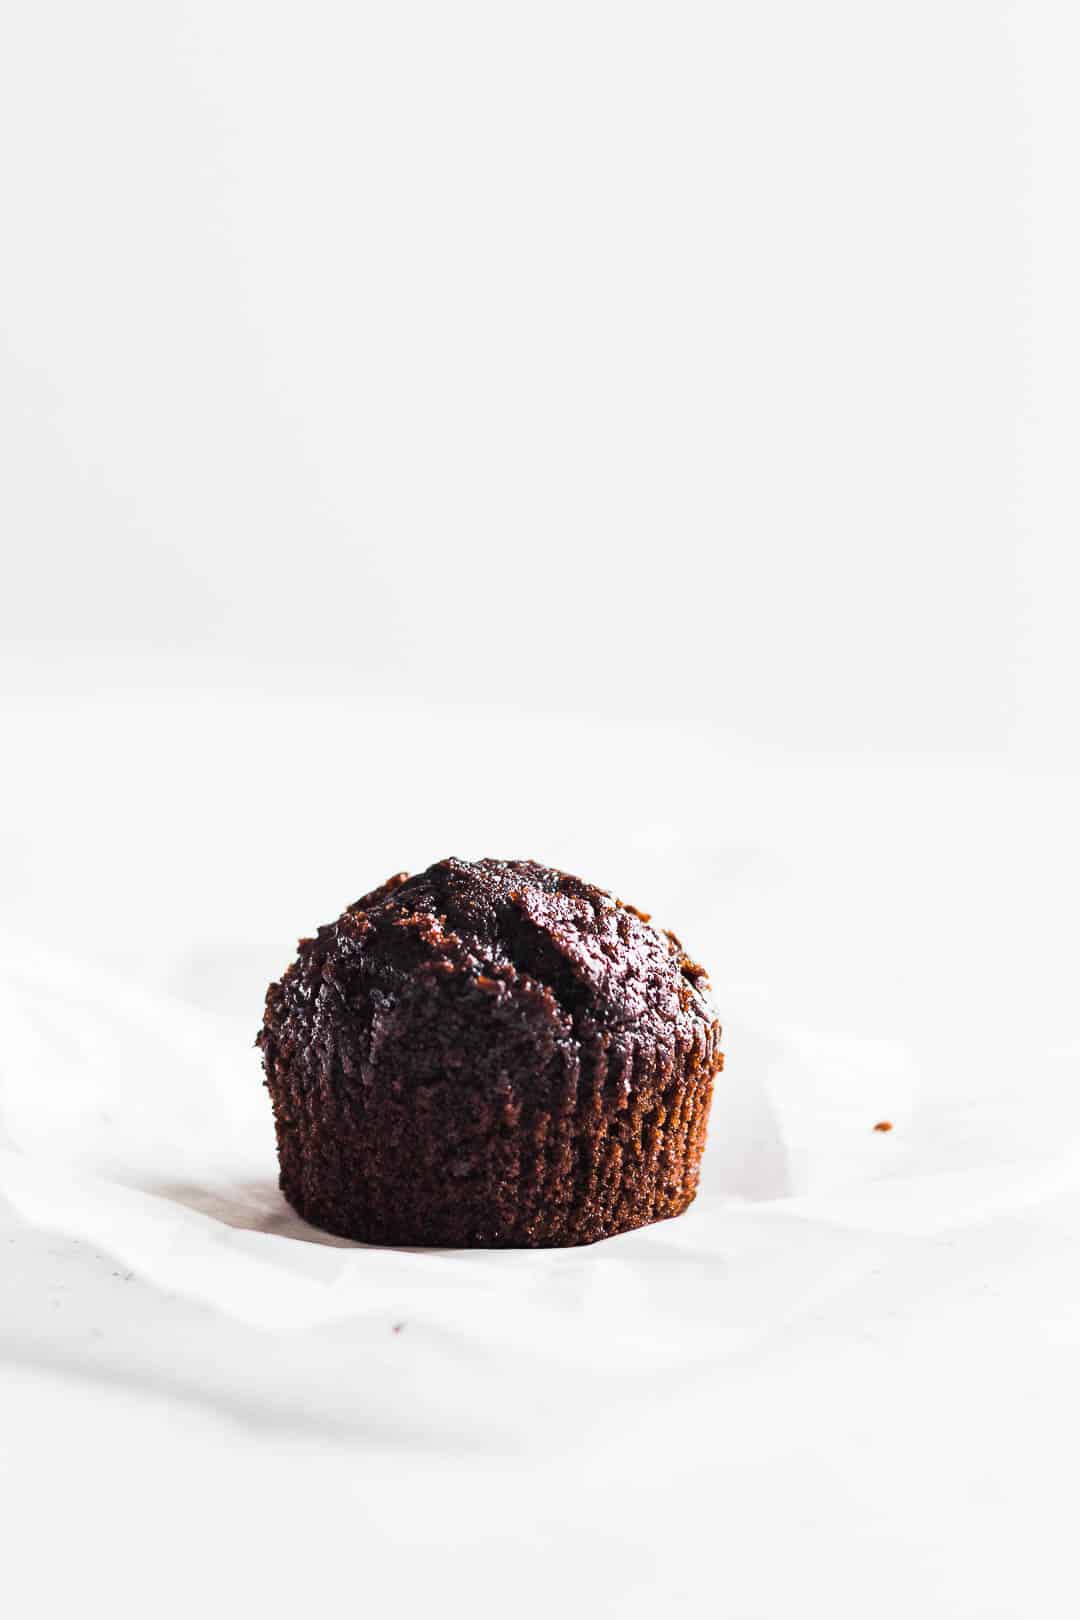 Chokolade cupcakes - opskrift på muffins med chokolade 